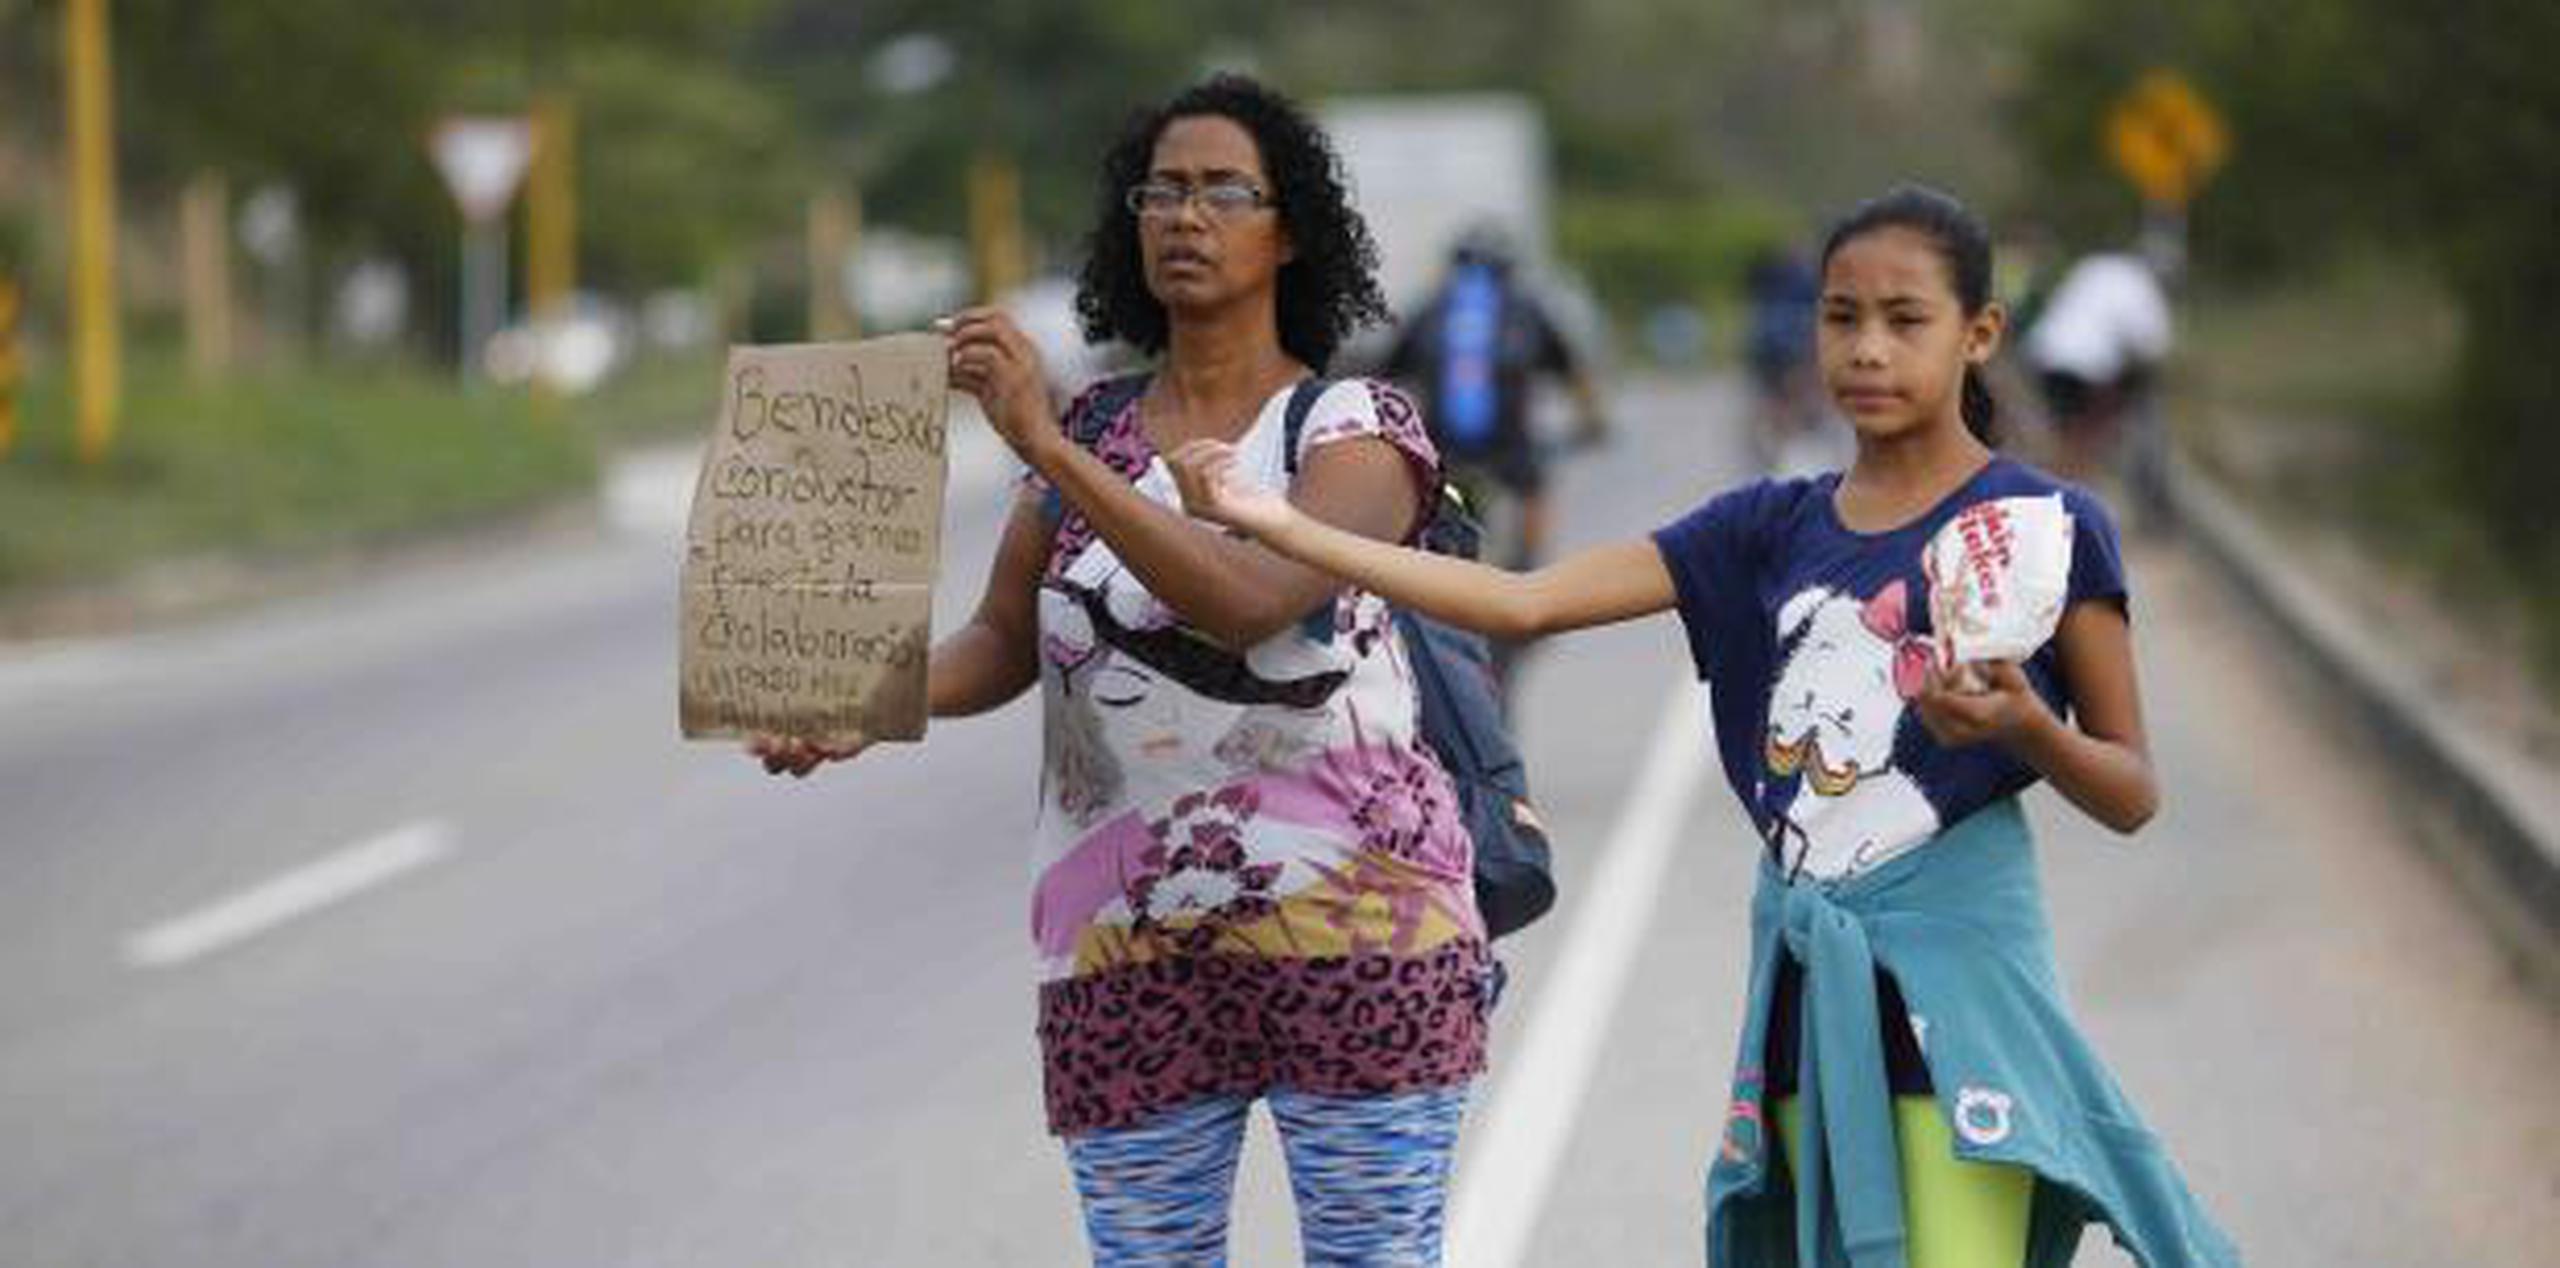 Sandra Cádiz sostiene un cartel hecho a mano con el mensaje "Bendesido (sic) conductor para que nos preste la colaboración", mientras su hija de 10 años, Angelis, espera con ella. (AP)